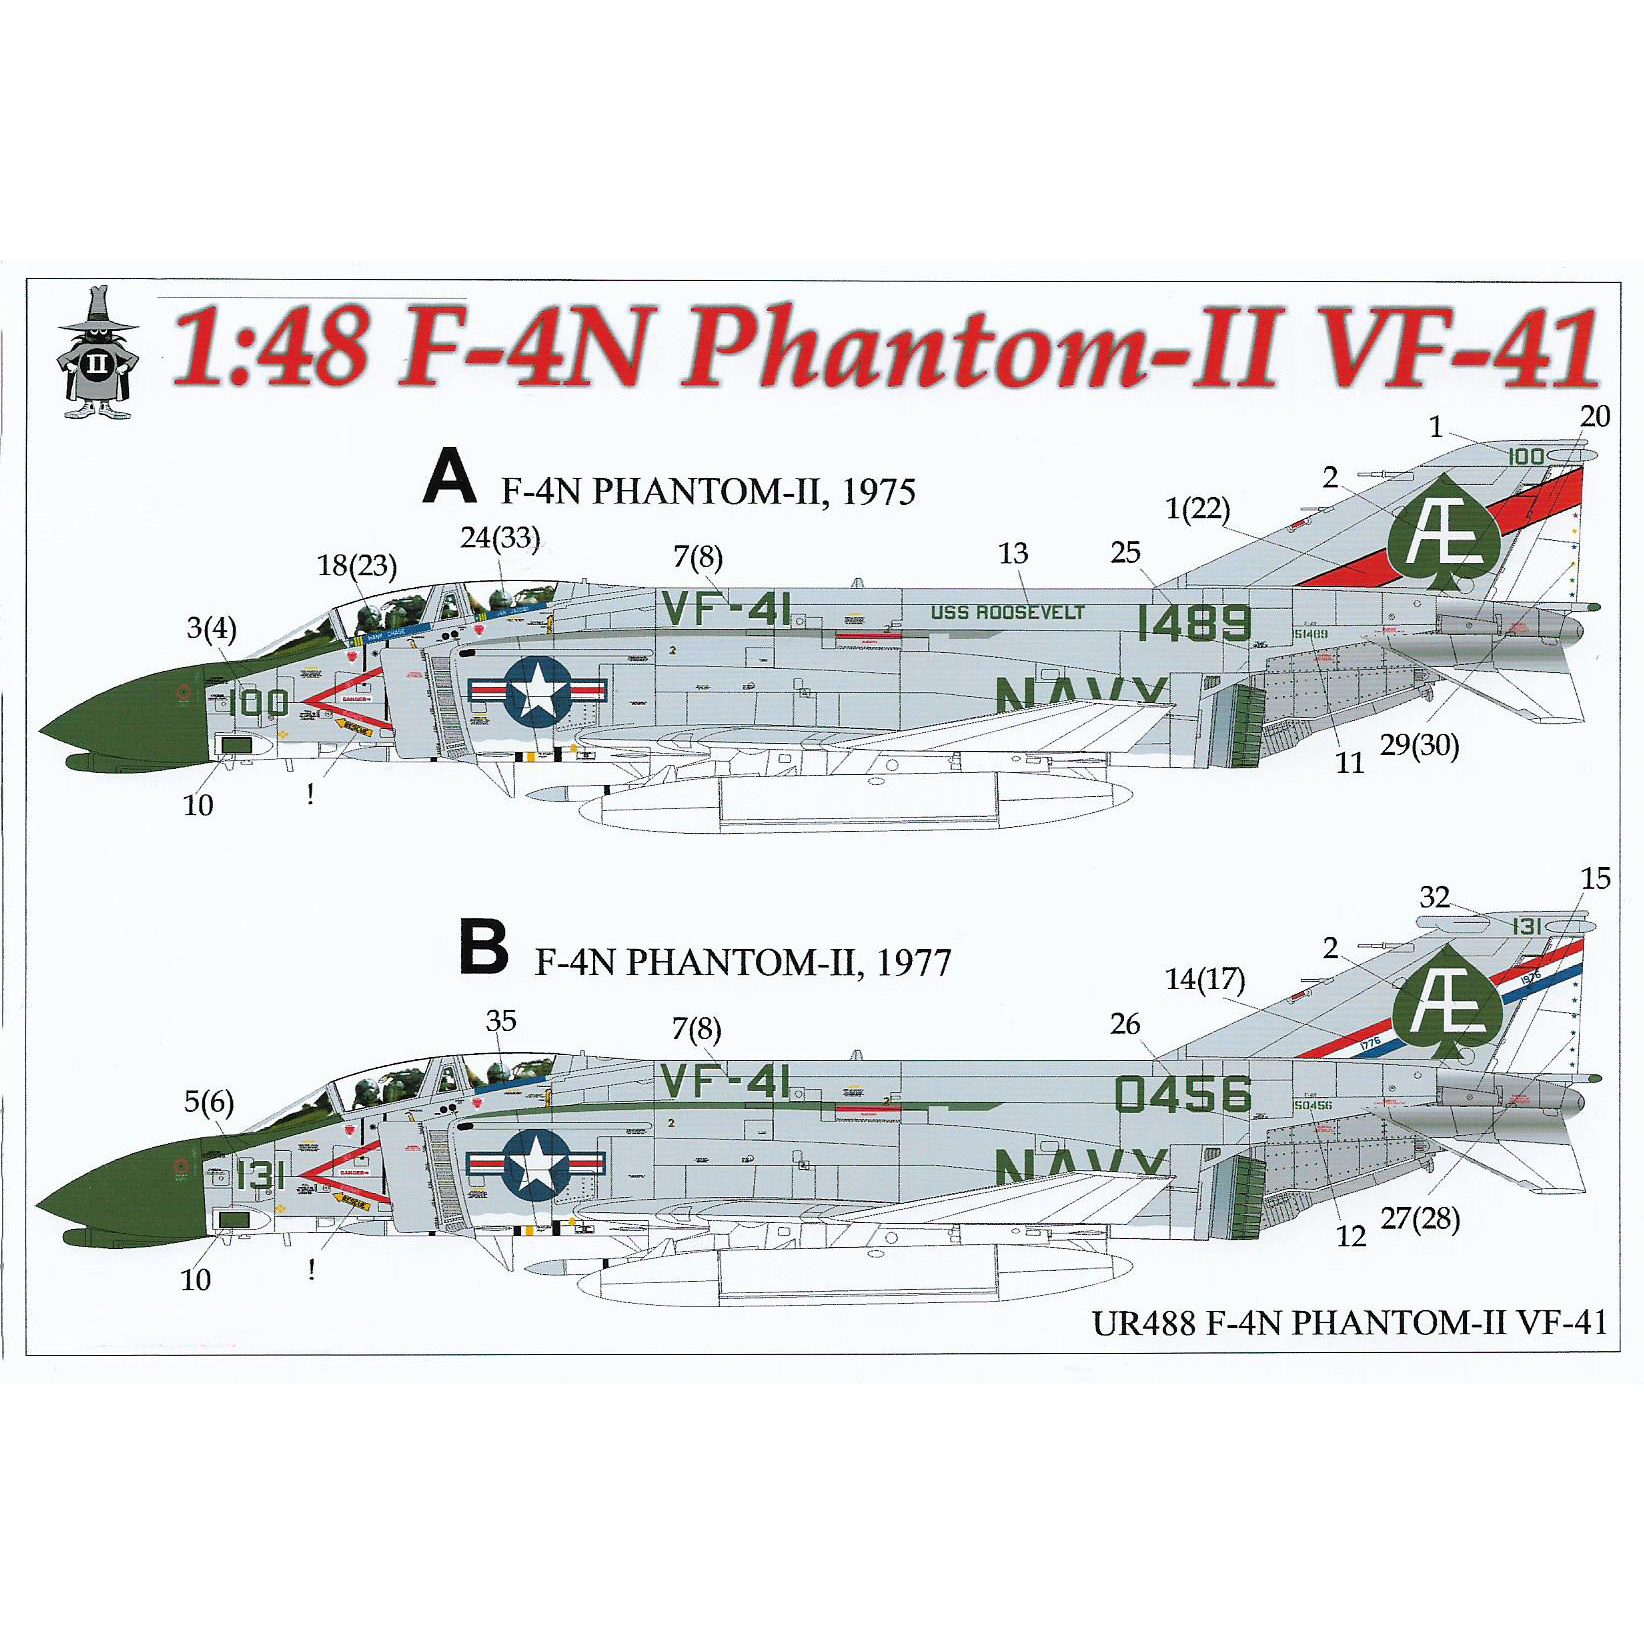 Декаль UpRise 1/48 для F-4N Phantom-II VF-41, без тех. надписей UR488